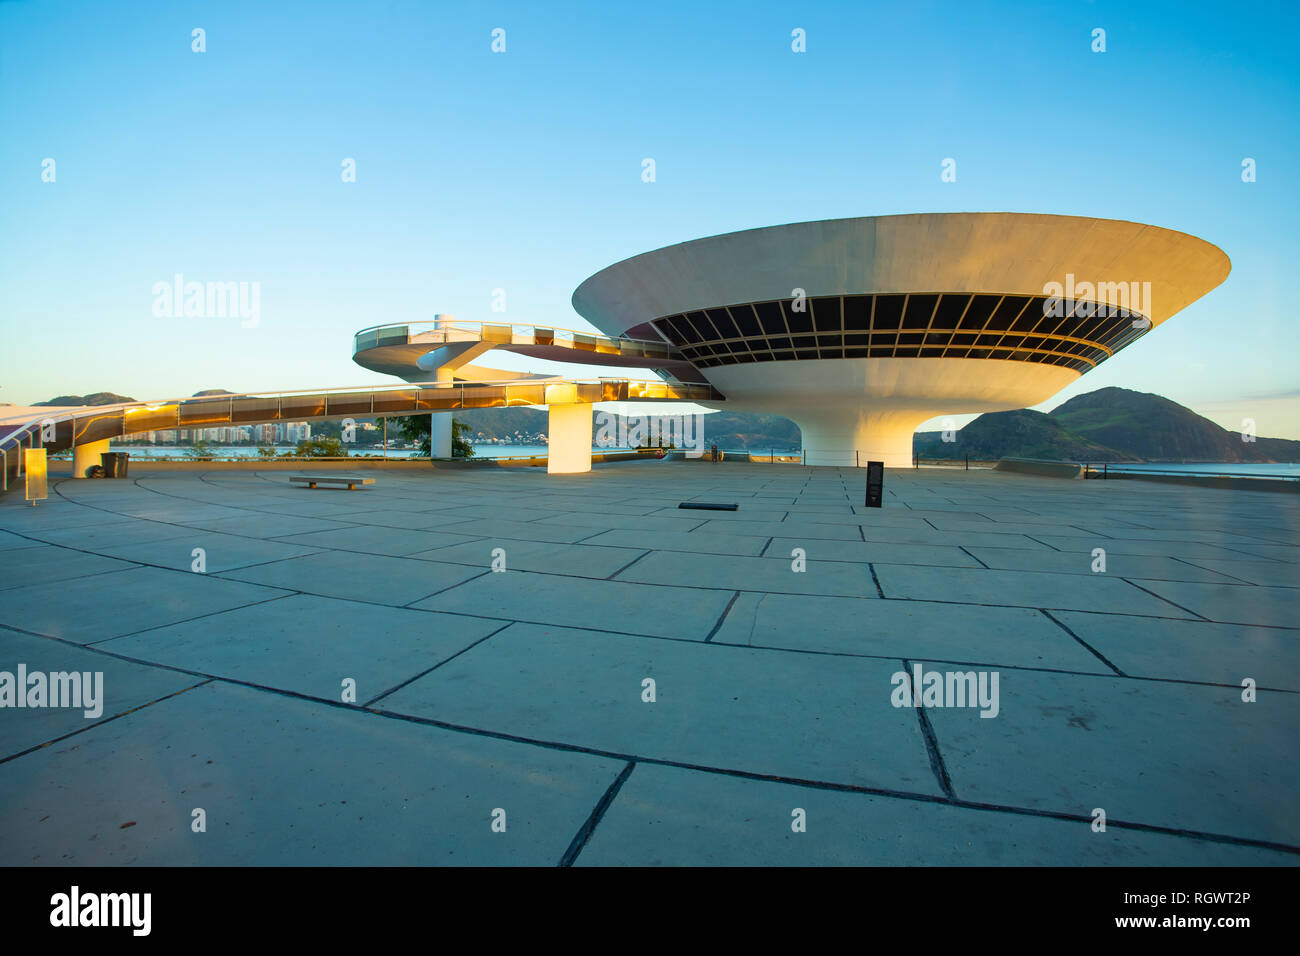 Ville de Niterói, l'état de Rio de Janeiro / Brésil Amérique du Sud. - 01/27/2019 Description : MAC Niteroi. Musée d'Art Contemporain de Niteroi. Cvmo architecte Banque D'Images